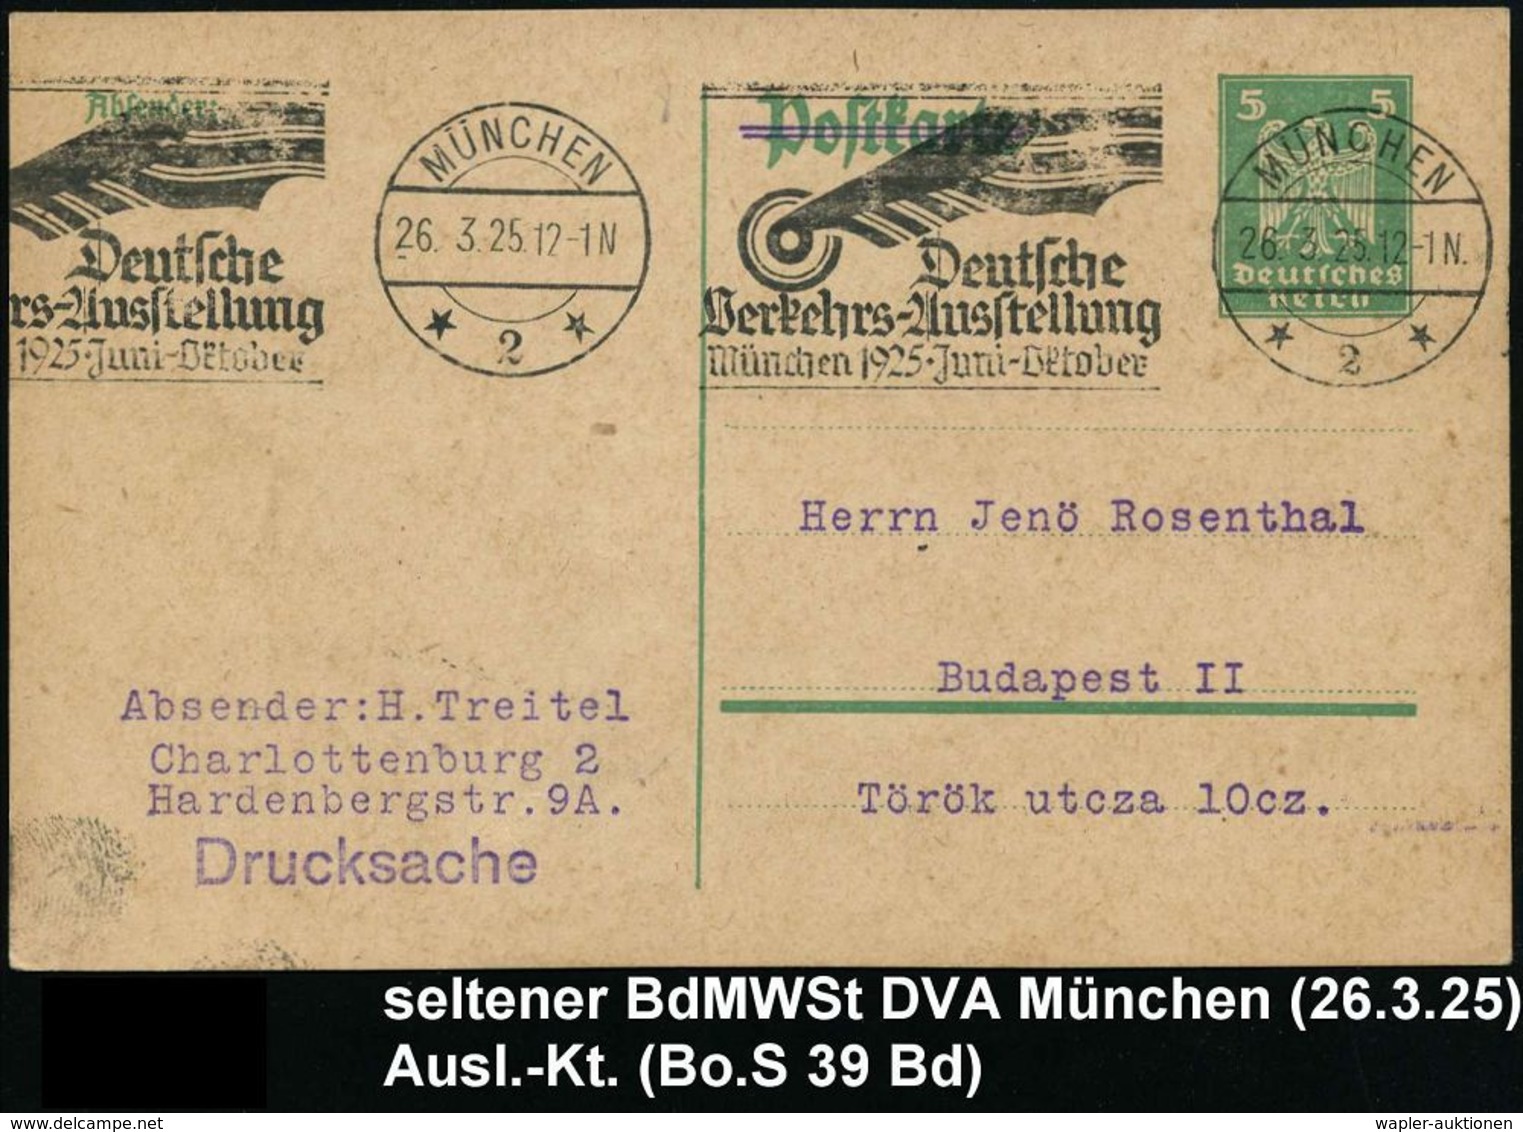 TRANSPORT- & VERKEHRS-AUSSTELLUNGEN / VERKEHRSKONGRESSE : MÜNCHEN/ *2*/ Dt./ Verkehrs-Ausst./ München.. 1925 (26.3.) BdM - Trains